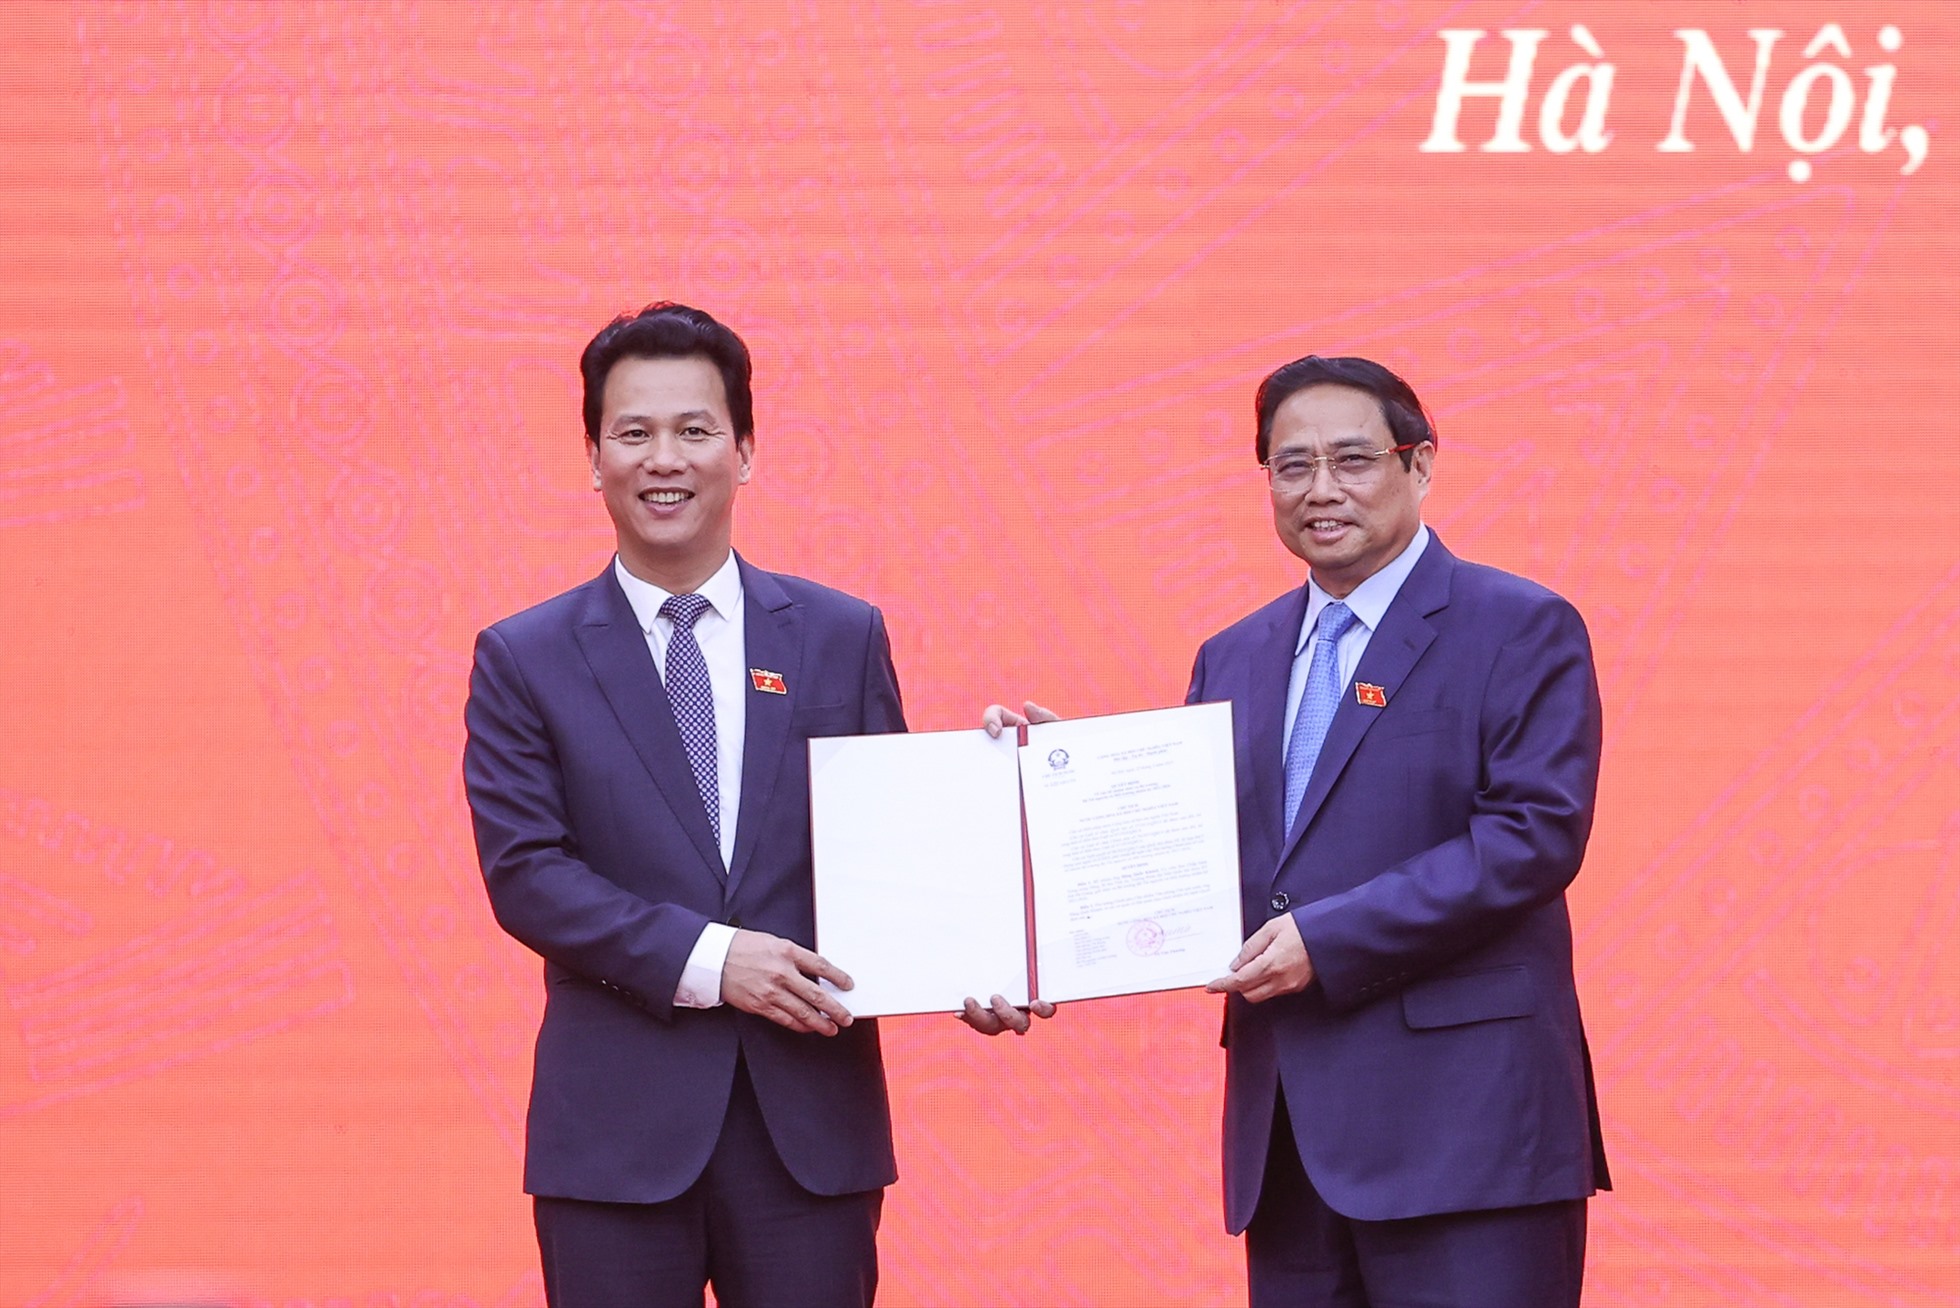 Thủ tướng Phạm Minh Chính trao Quyết định của Chủ tịch nước bổ nhiệm ông Đặng Quốc Khánh, Bí thư Tỉnh ủy Hà Giang làm Bộ trưởng Bộ Tài nguyên và Môi trường nhiệm kỳ 2021-2026 - Ảnh: VGP